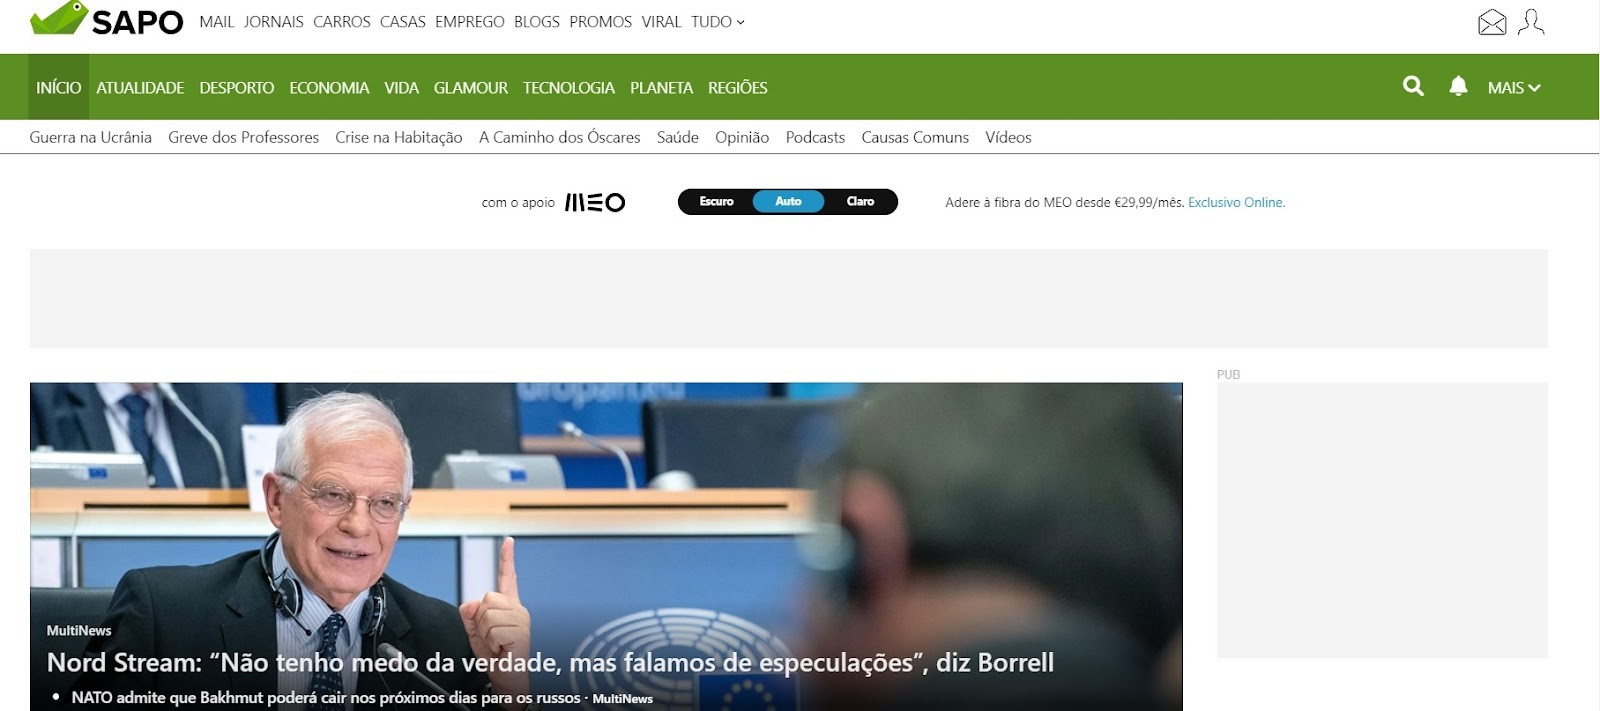 SAPO - свободный поисковик в Португалии